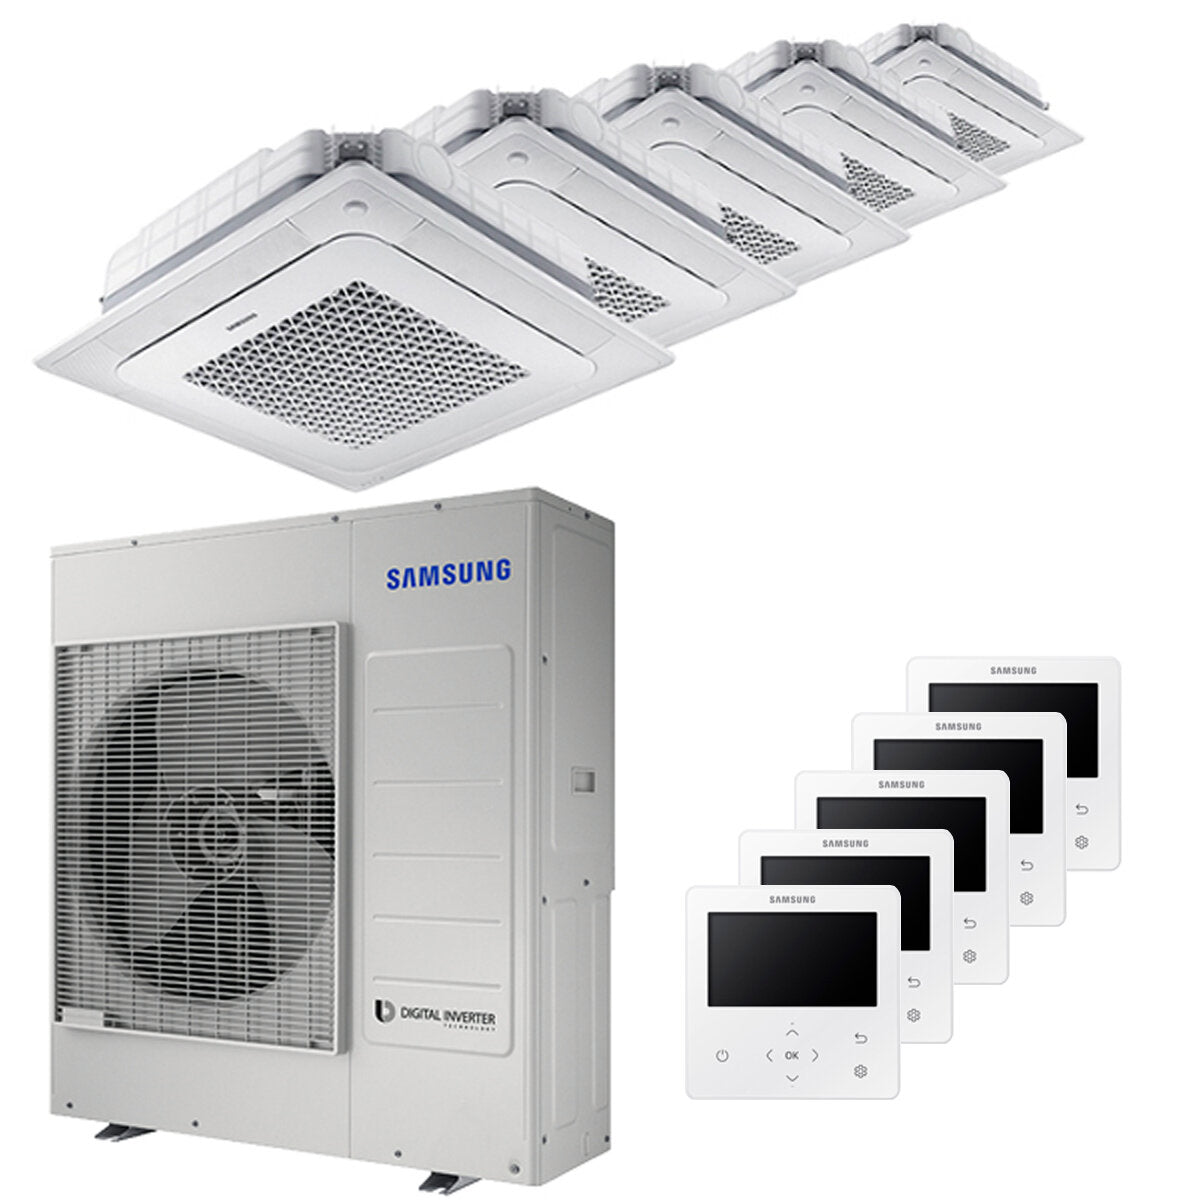 Samsung air conditioner Windfree 4-way penta split 7000 + 9000 + 9000 + 9000 + 9000 BTU inverter A ++ outdoor unit 10.0 kW